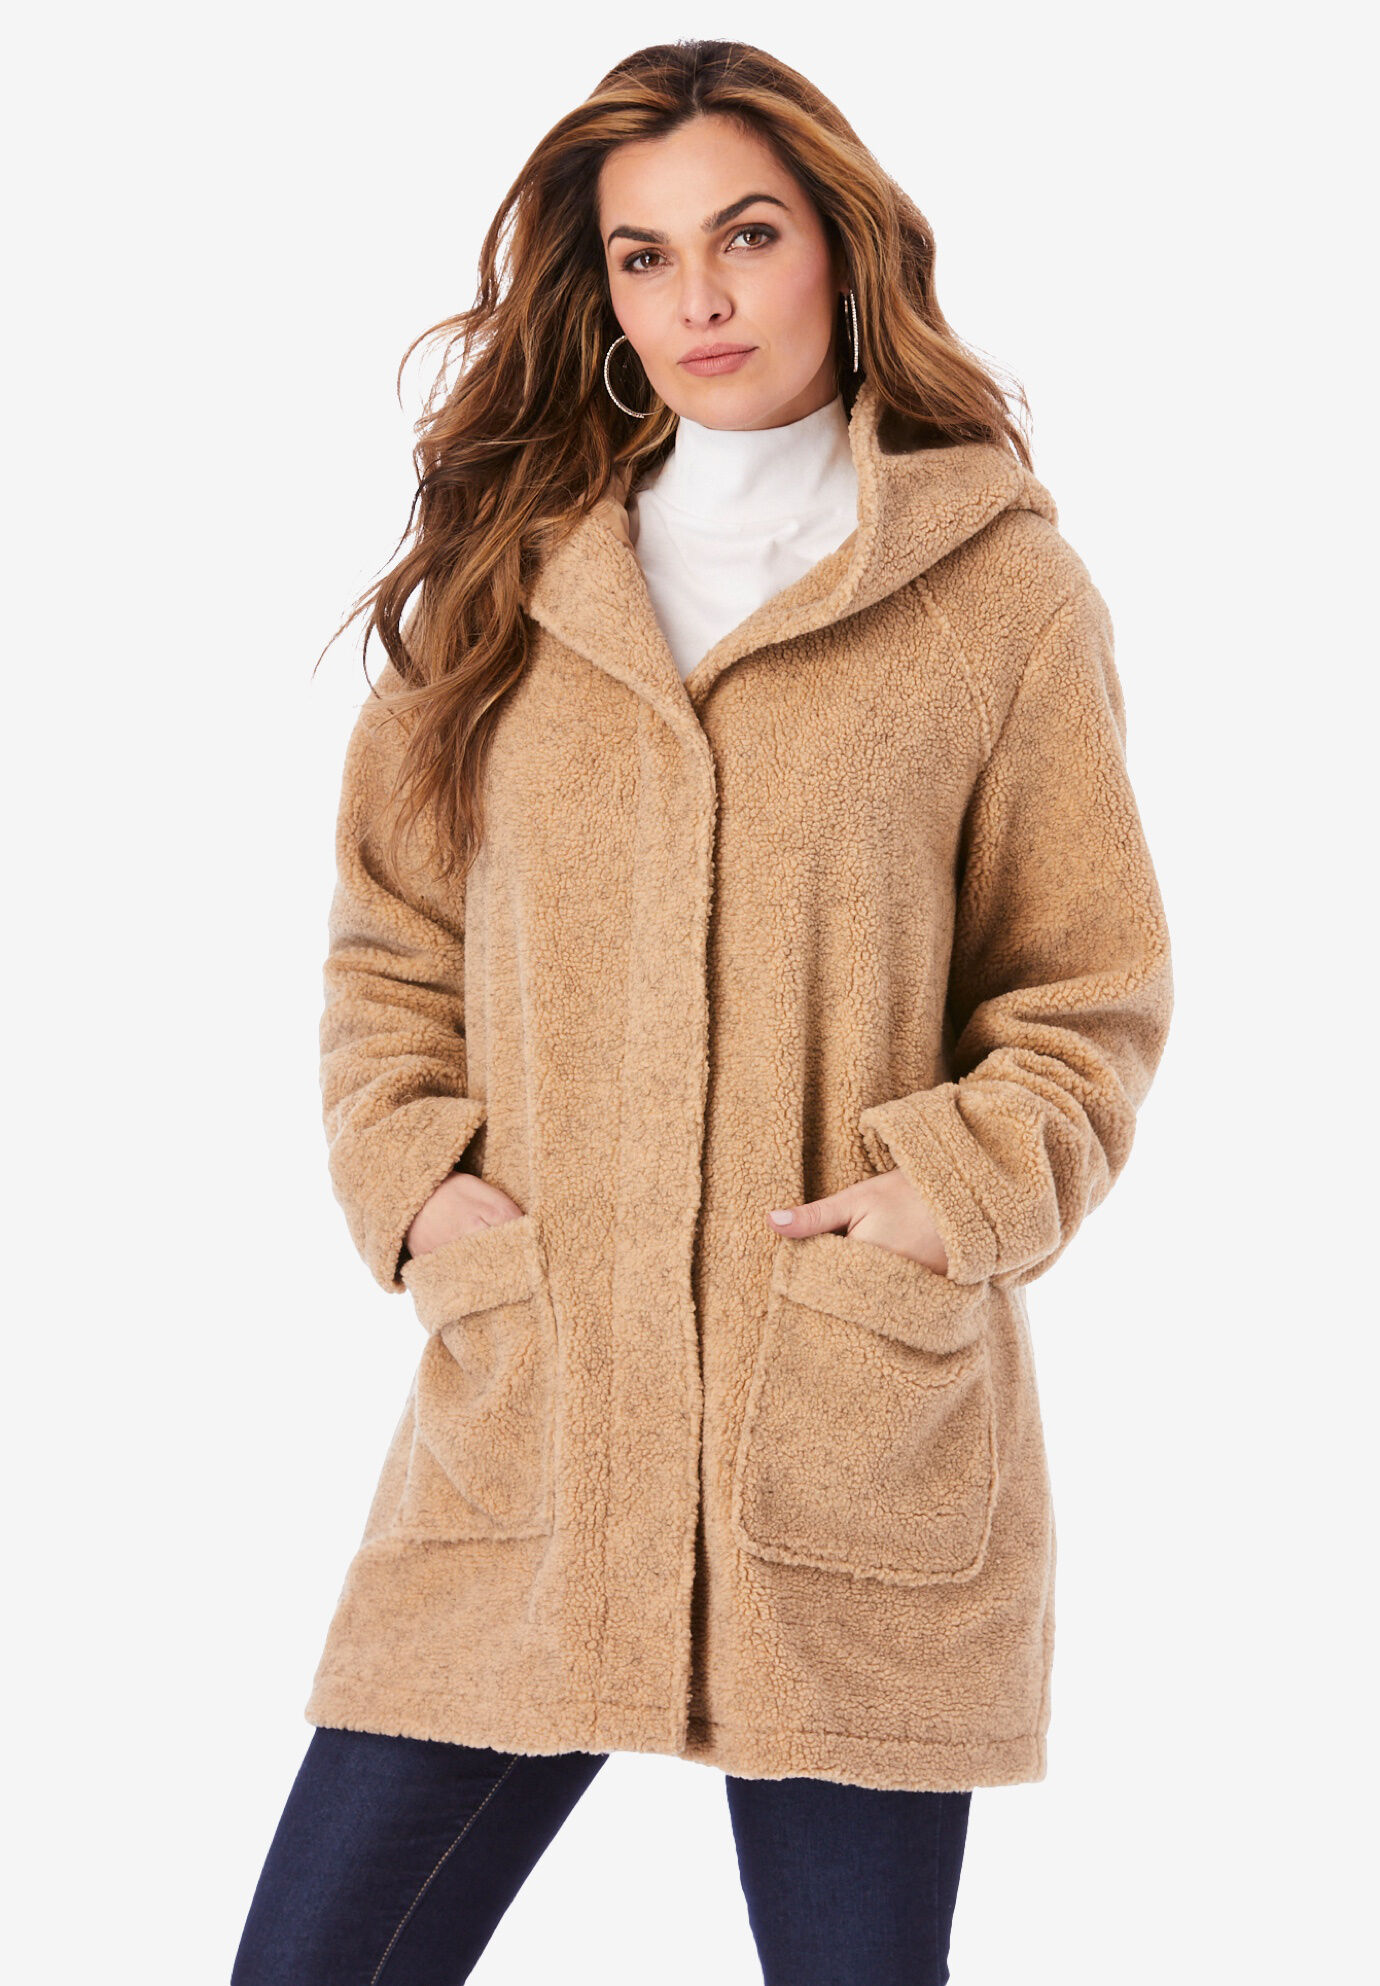 Women's Plus Size Wool Coats & Fleece Jackets | Roaman's